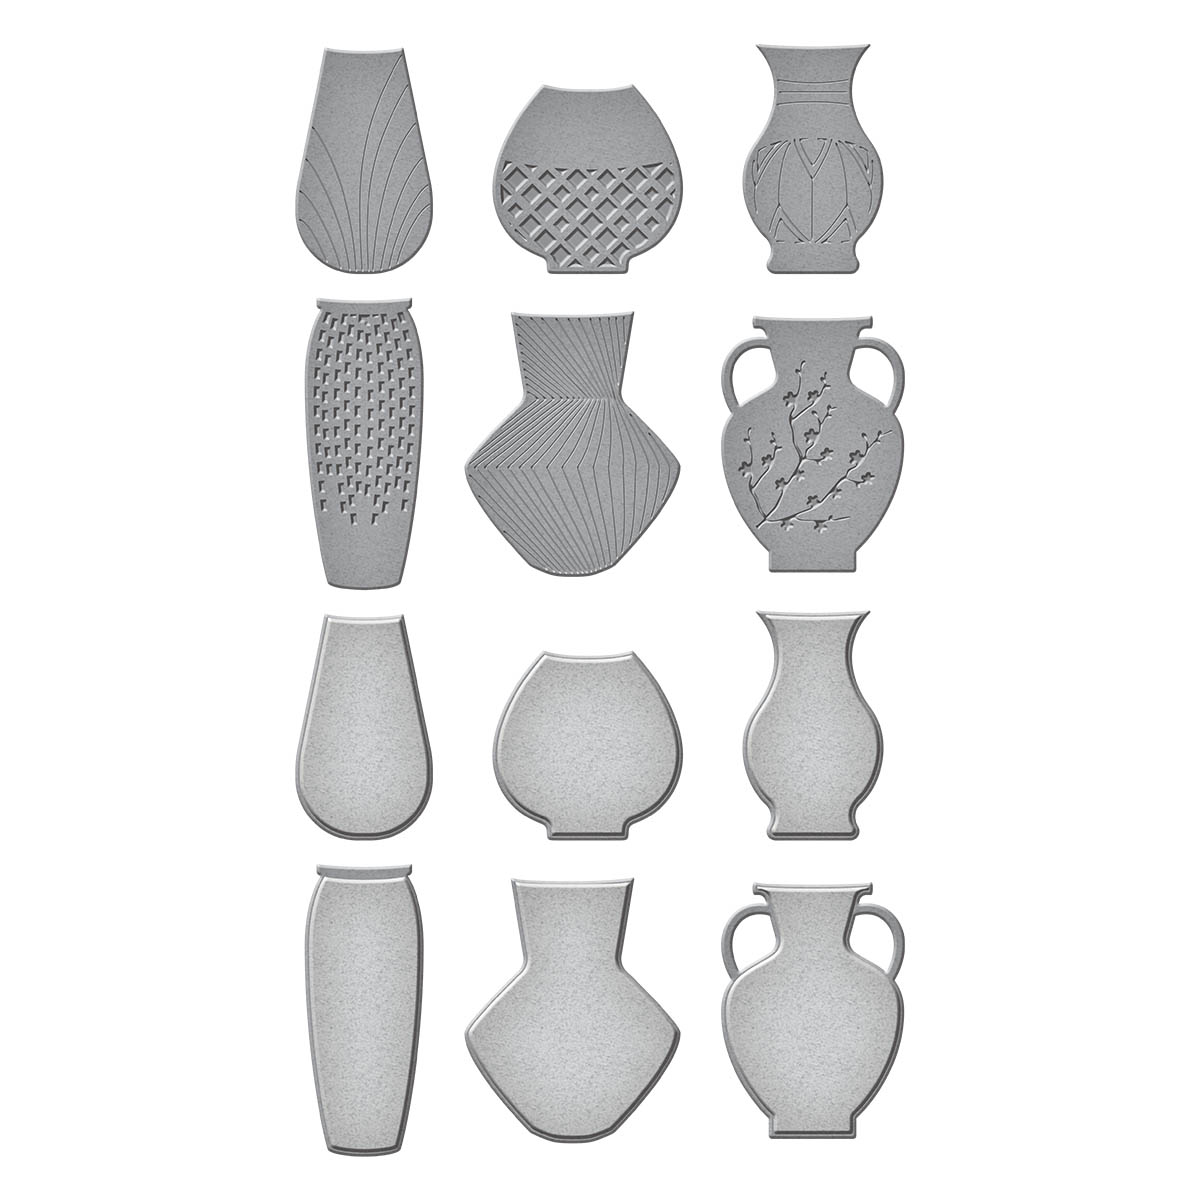 Spellbinders Die Simon Hurley Ceramic Vases